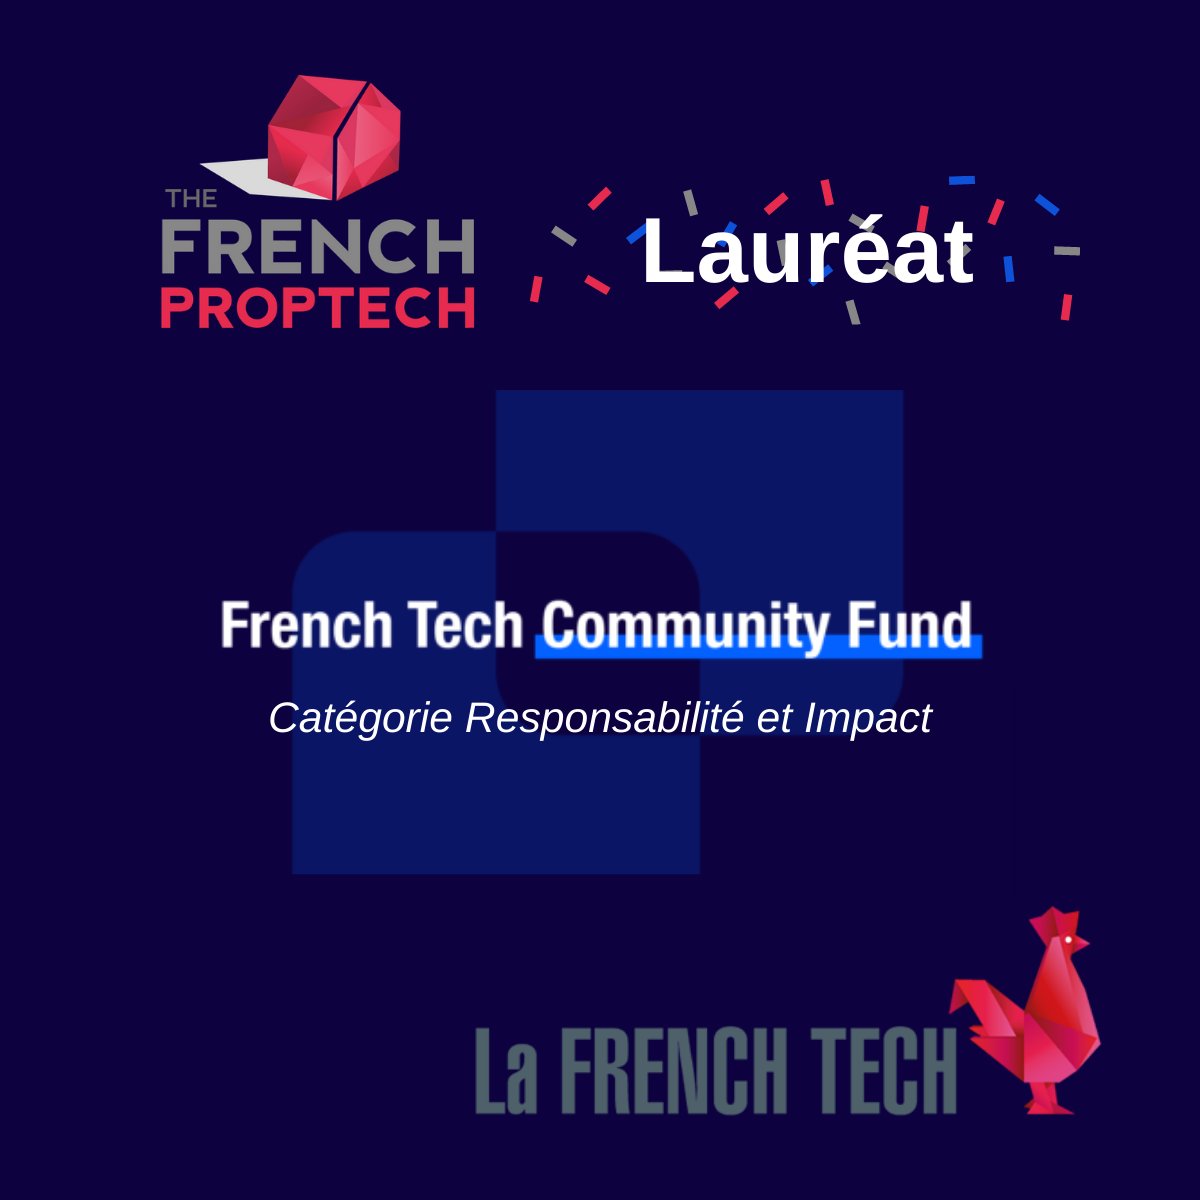 Big news ! 📢 @Frenchproptech est lauréat du #FrenchTech Community Fund 2020 ! Merci à la La @LaFrenchTech pour cette reconnaissance 🙌 Merci aussi à nos adhérents, nos partenaires et nos ambassadeurs pour leur engagement et sans qui la French #Proptech ne pourrait pas exister ❤️